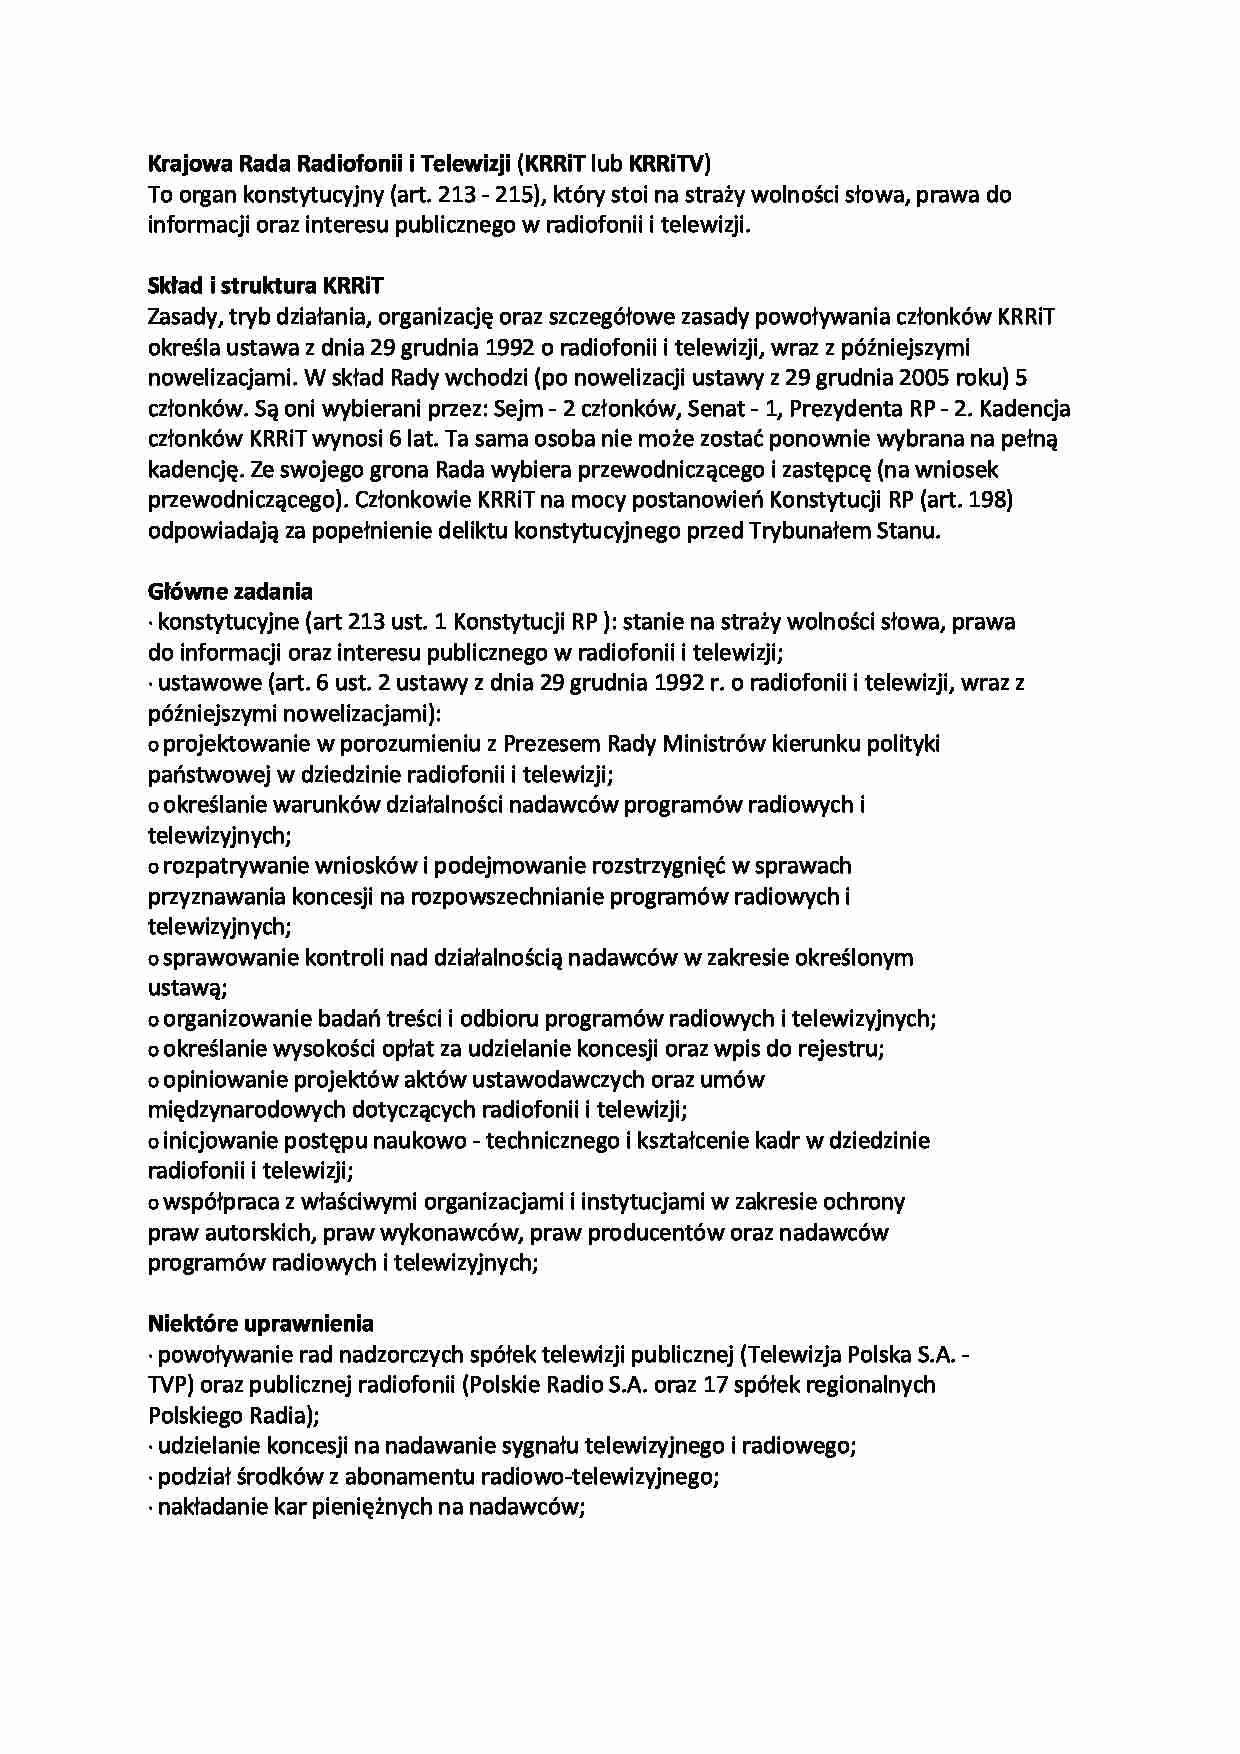 Krajowa Rada Radiofonii i Telewizji-opracowanie - Skład i struktura KRRiT - strona 1